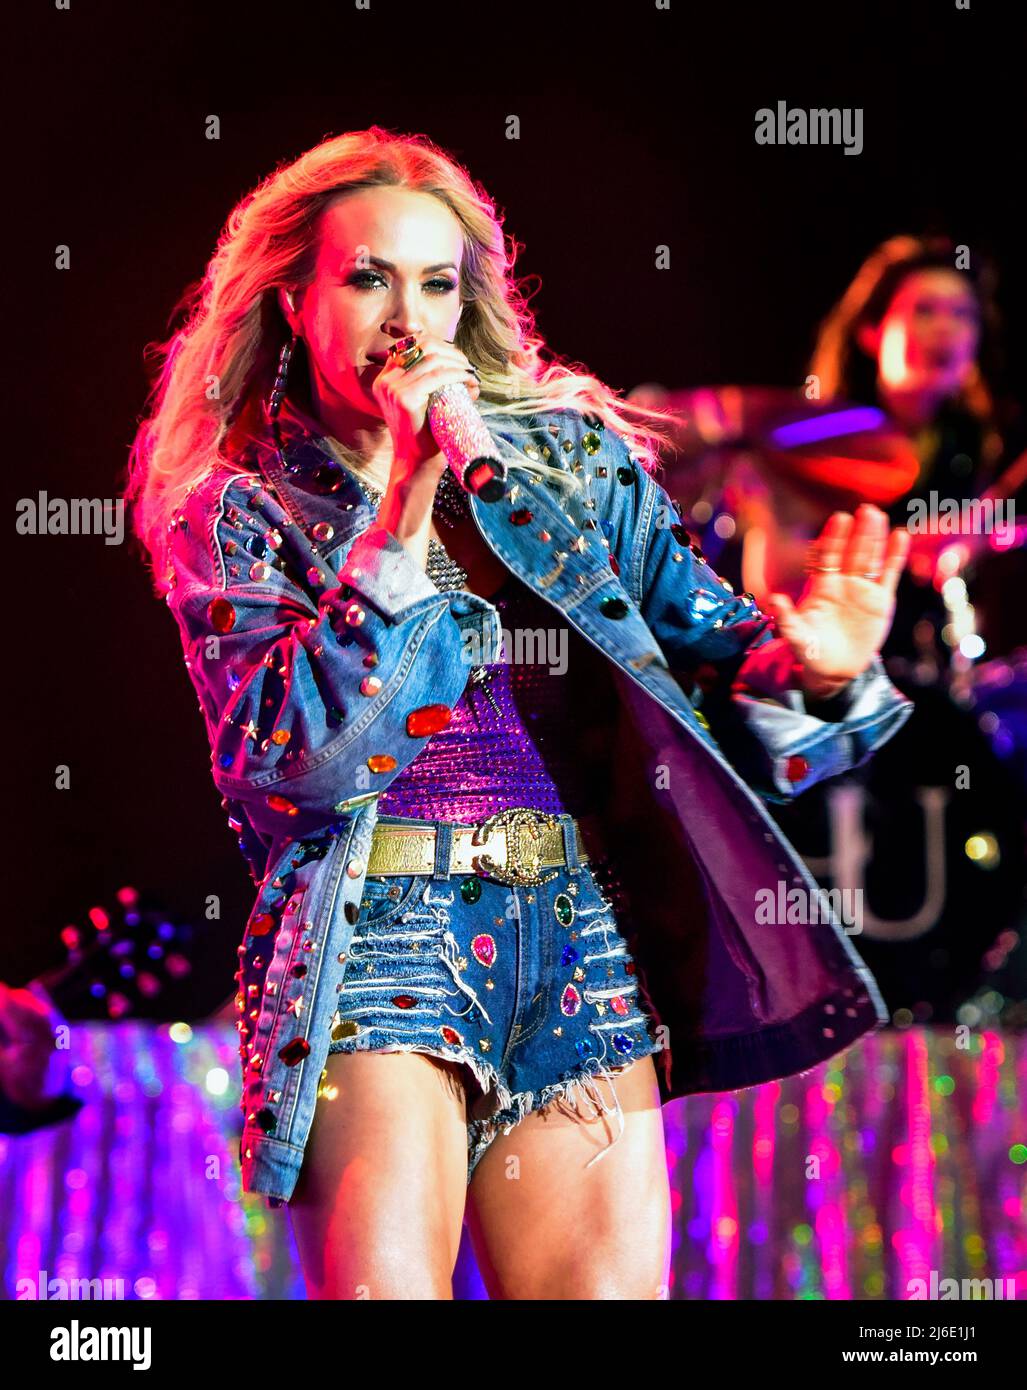 Indio, Californie, le 30 avril 2022 - Carrie Underwood sur scène au Stagecoach Country Music Festival. Crédit : Ken Howard/Alay Live News Banque D'Images